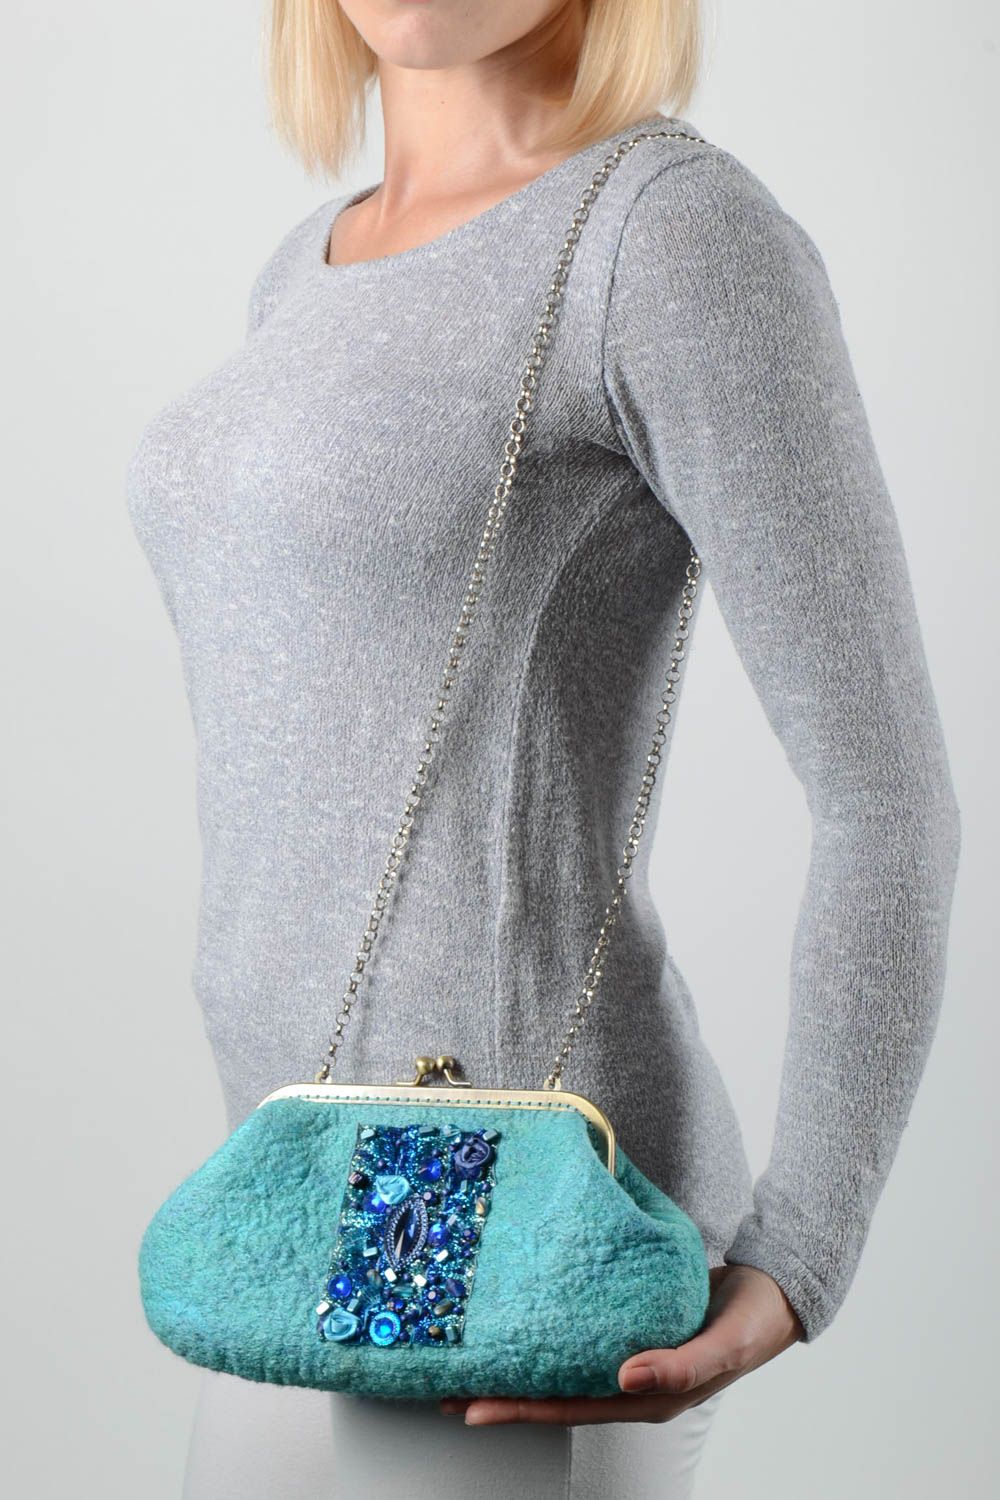 Sac pochette fait main Sac de laine turquoise avec chaîne Accessoire femme photo 1